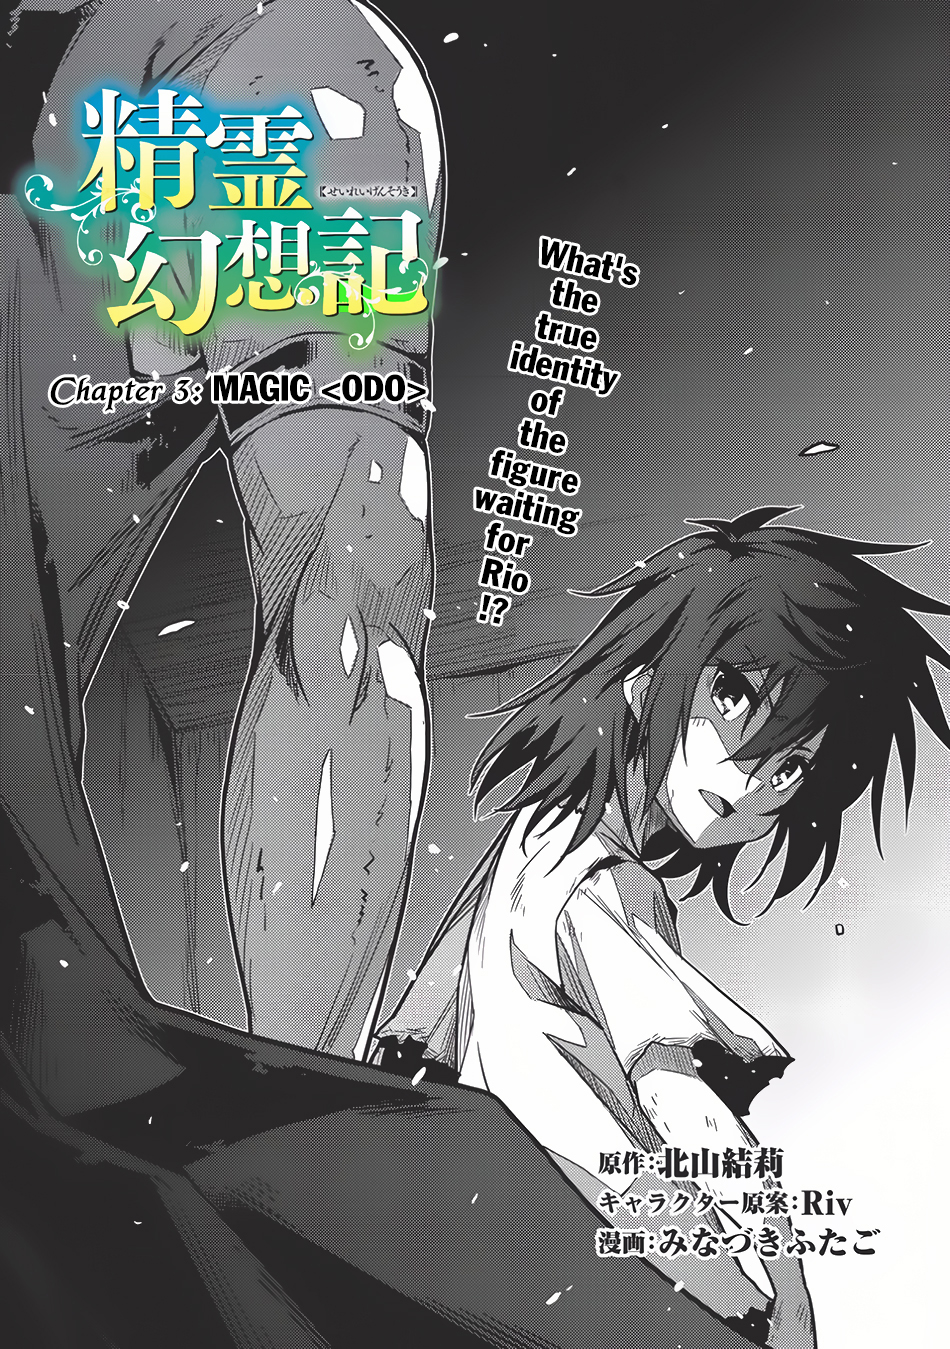 Seirei Gensouki Vol. 1 Ch. 3 Magic <ODO>